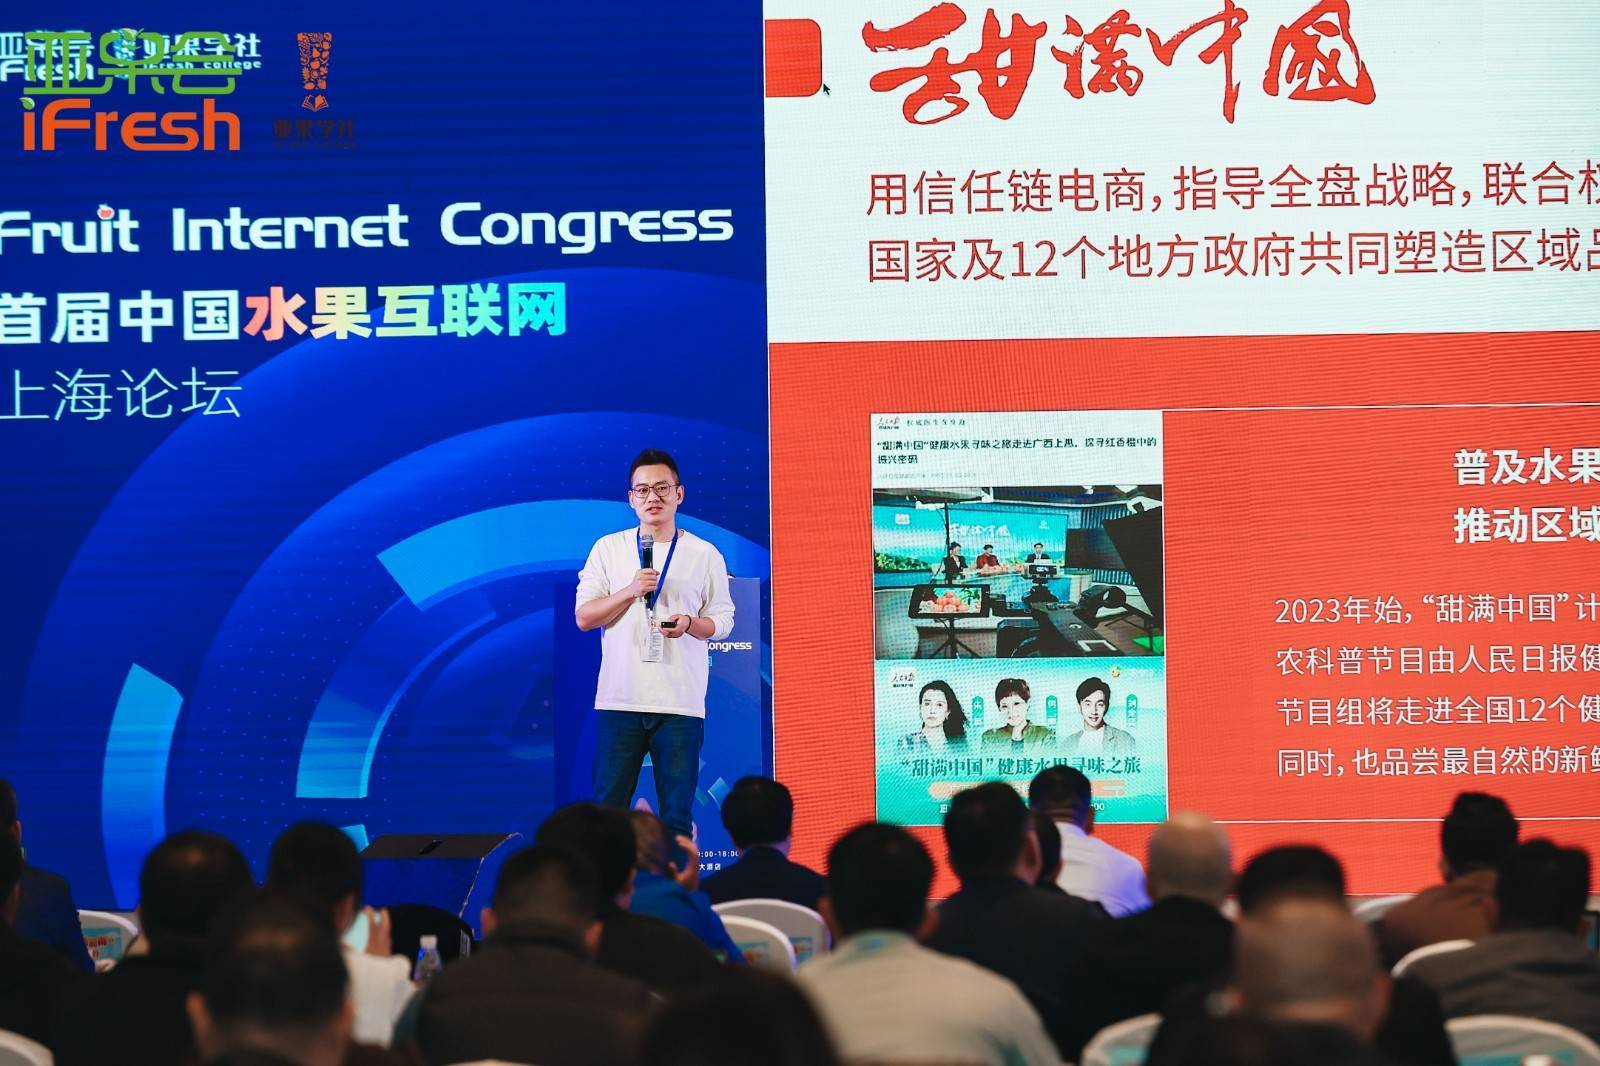 热点|辰颐物语出席首届水果互联网论坛 与你分享甜满中国